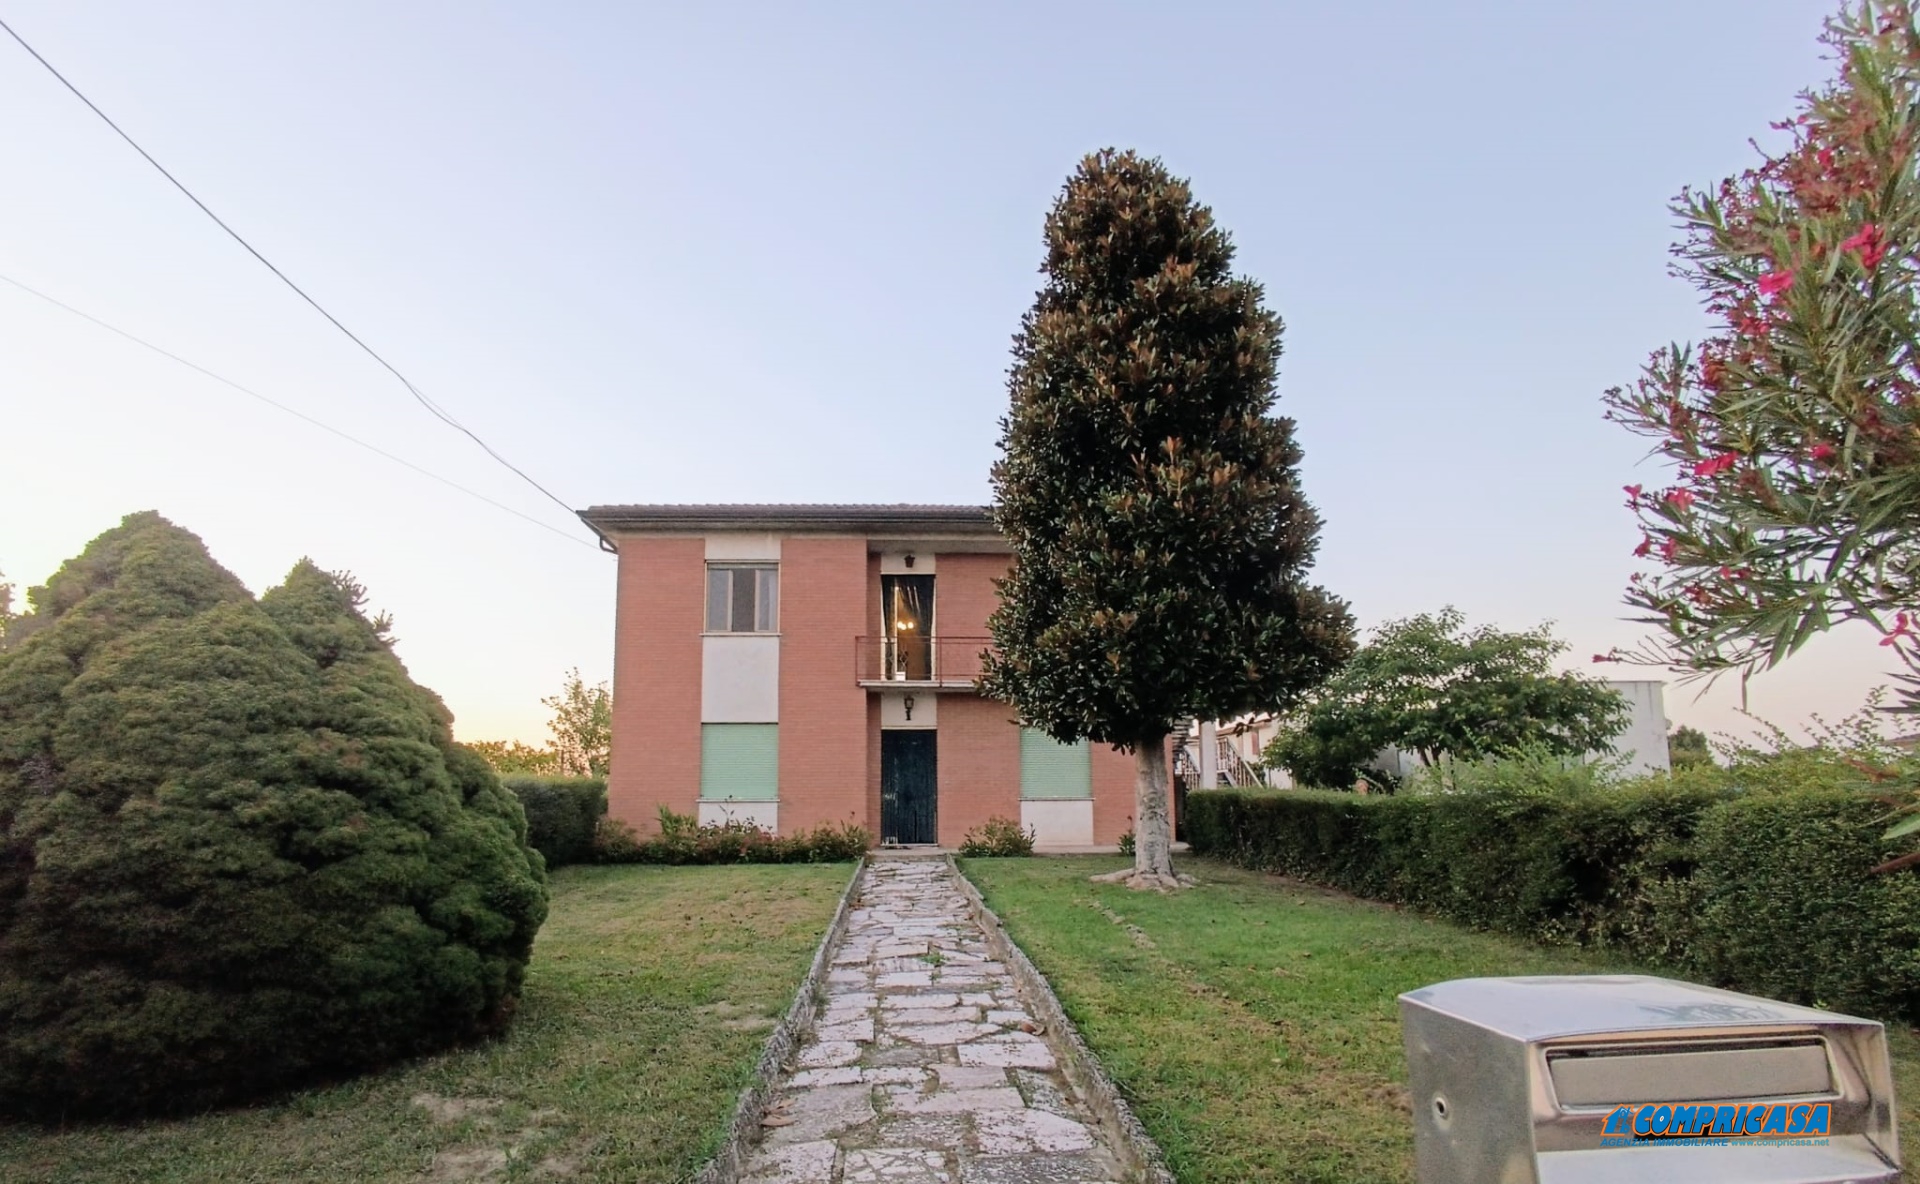 Villa in vendita a Urbana, 13 locali, prezzo € 120.000 | PortaleAgenzieImmobiliari.it